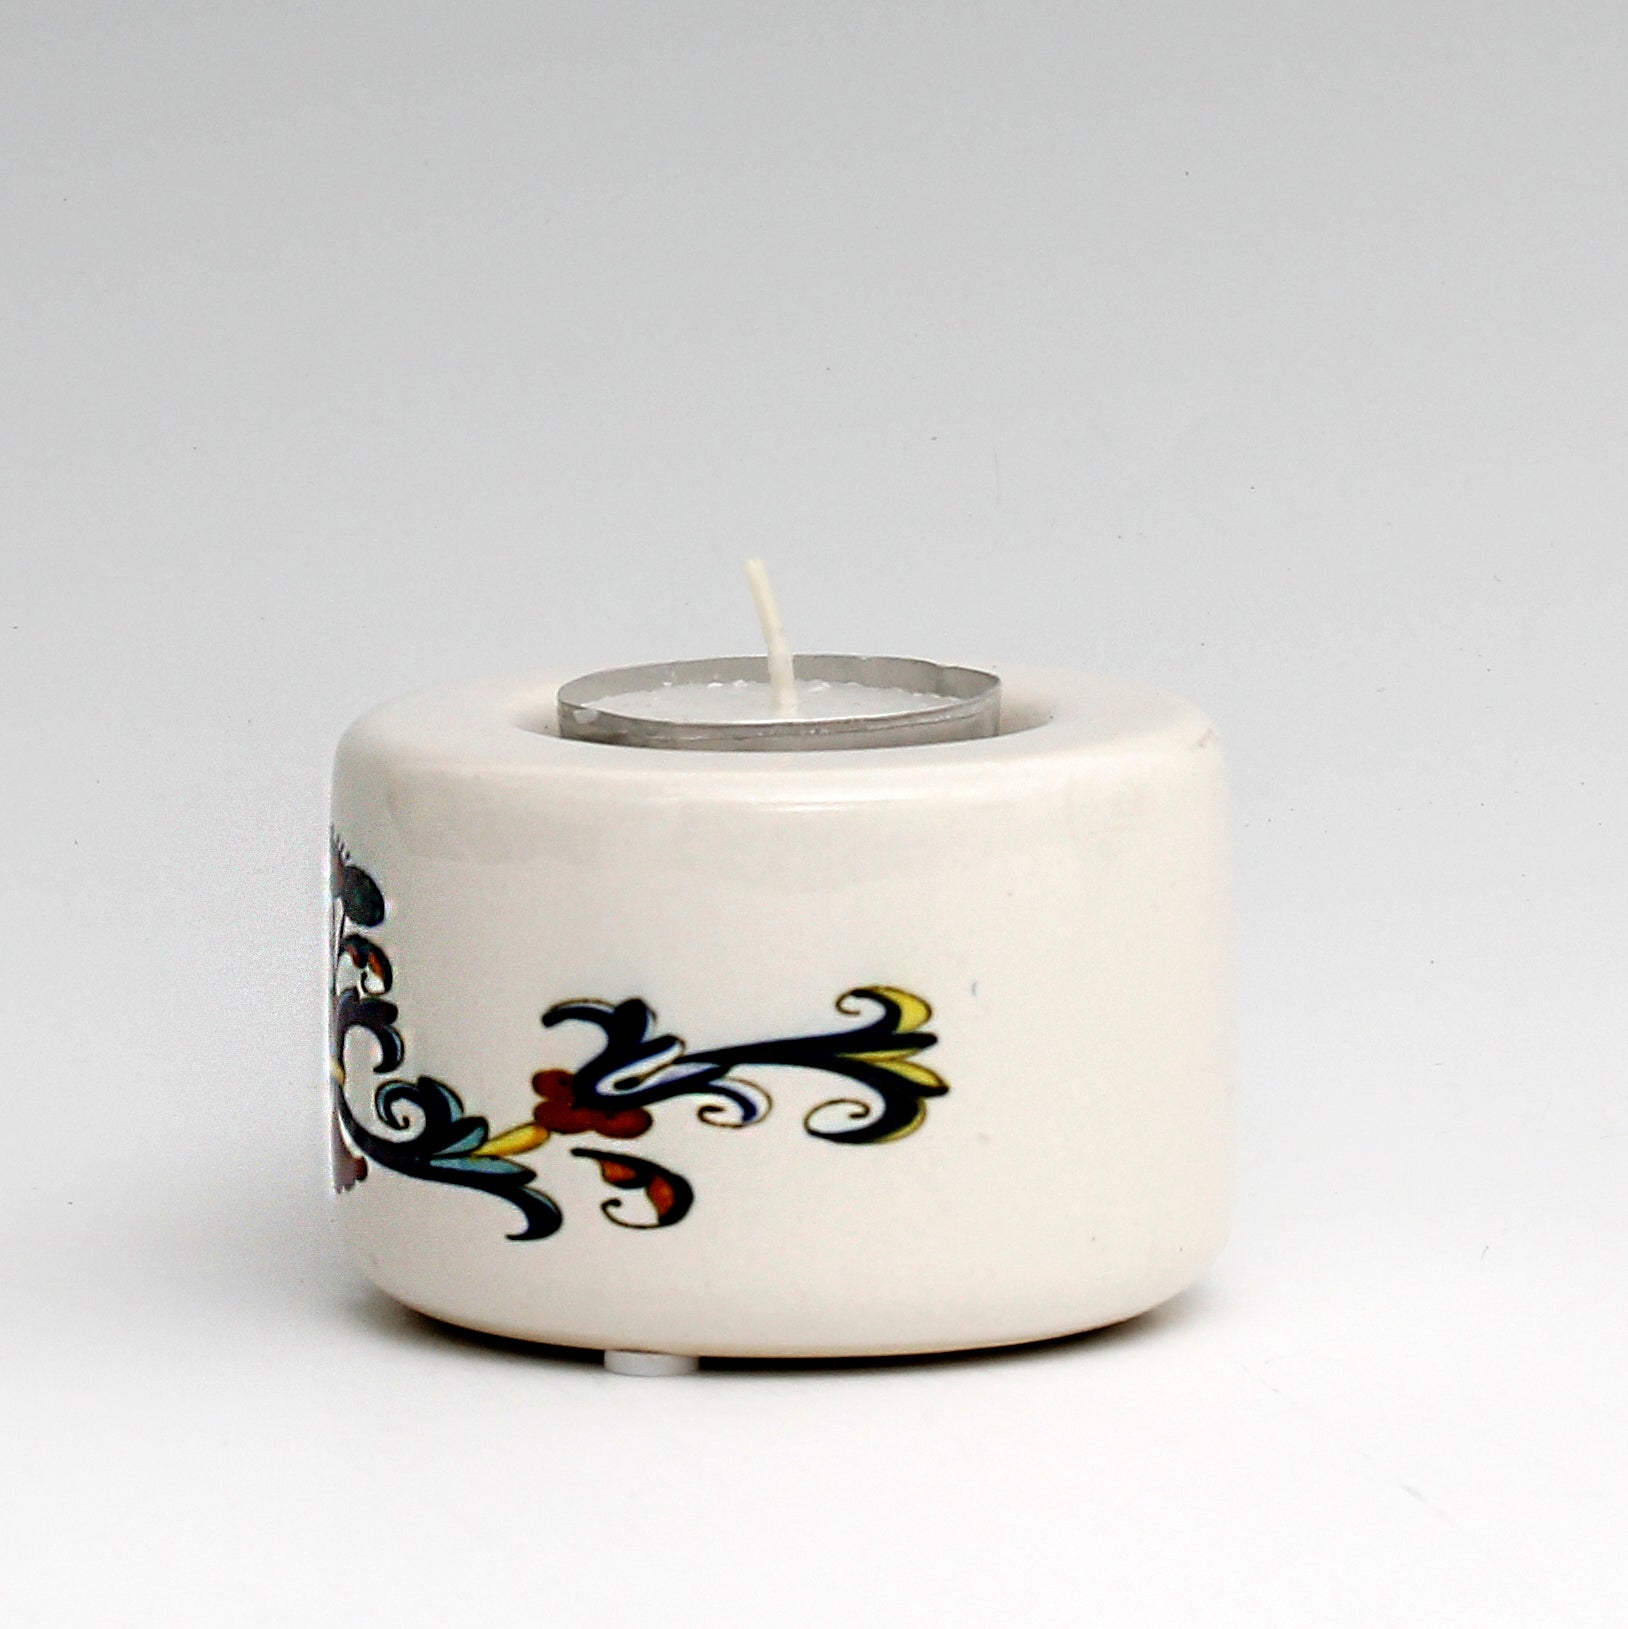 SUBLIMART: Ceramic Tealight in Ricco Deruta Design